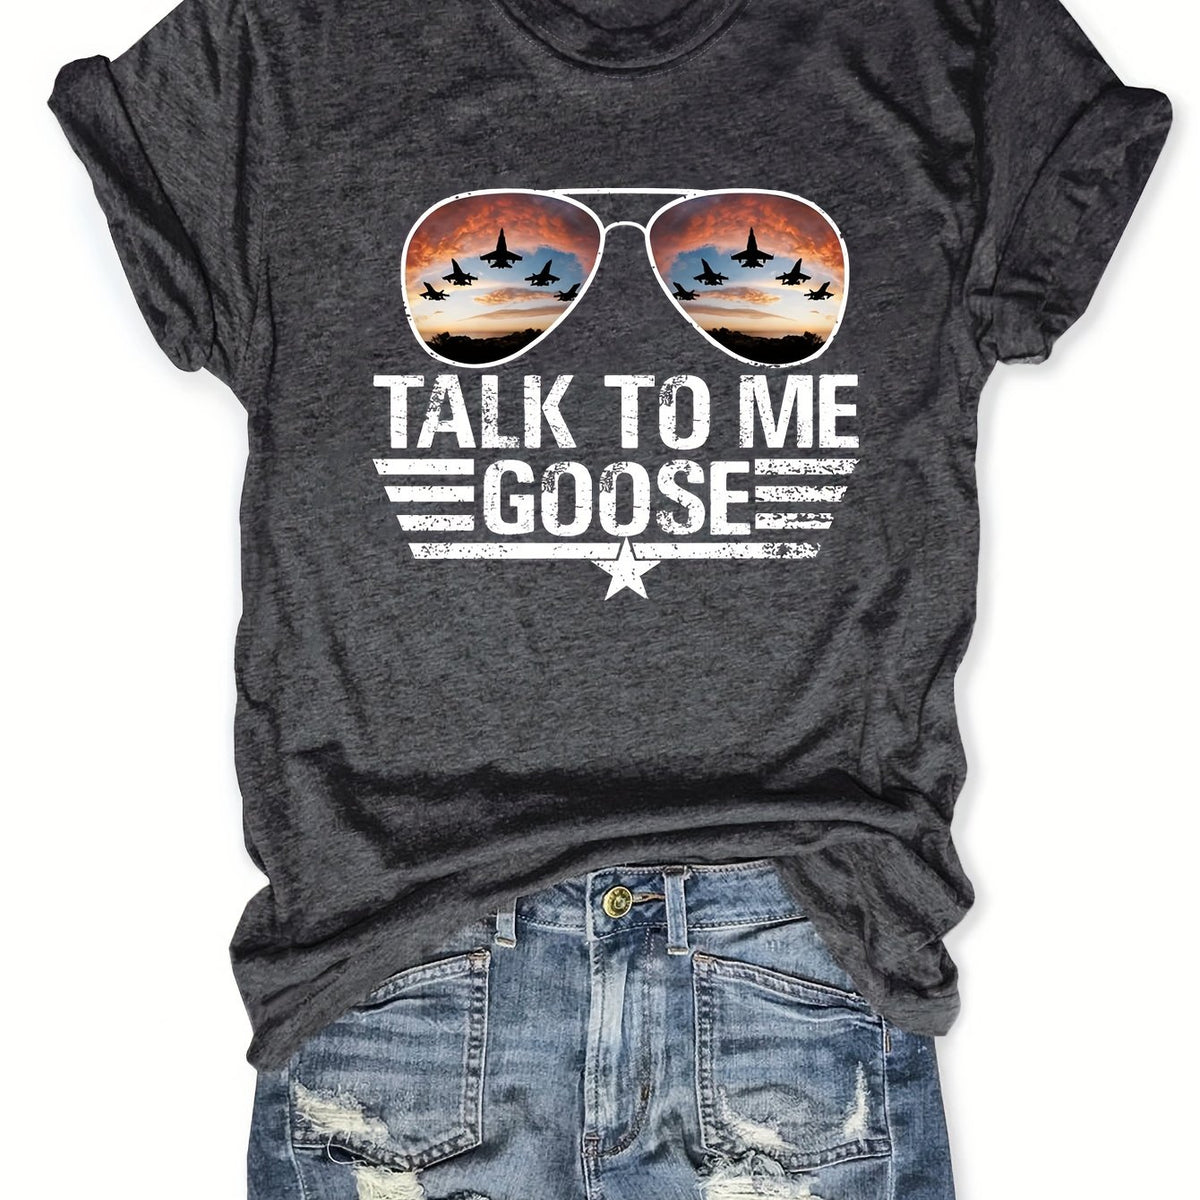 Talk to me Goose T-shirt